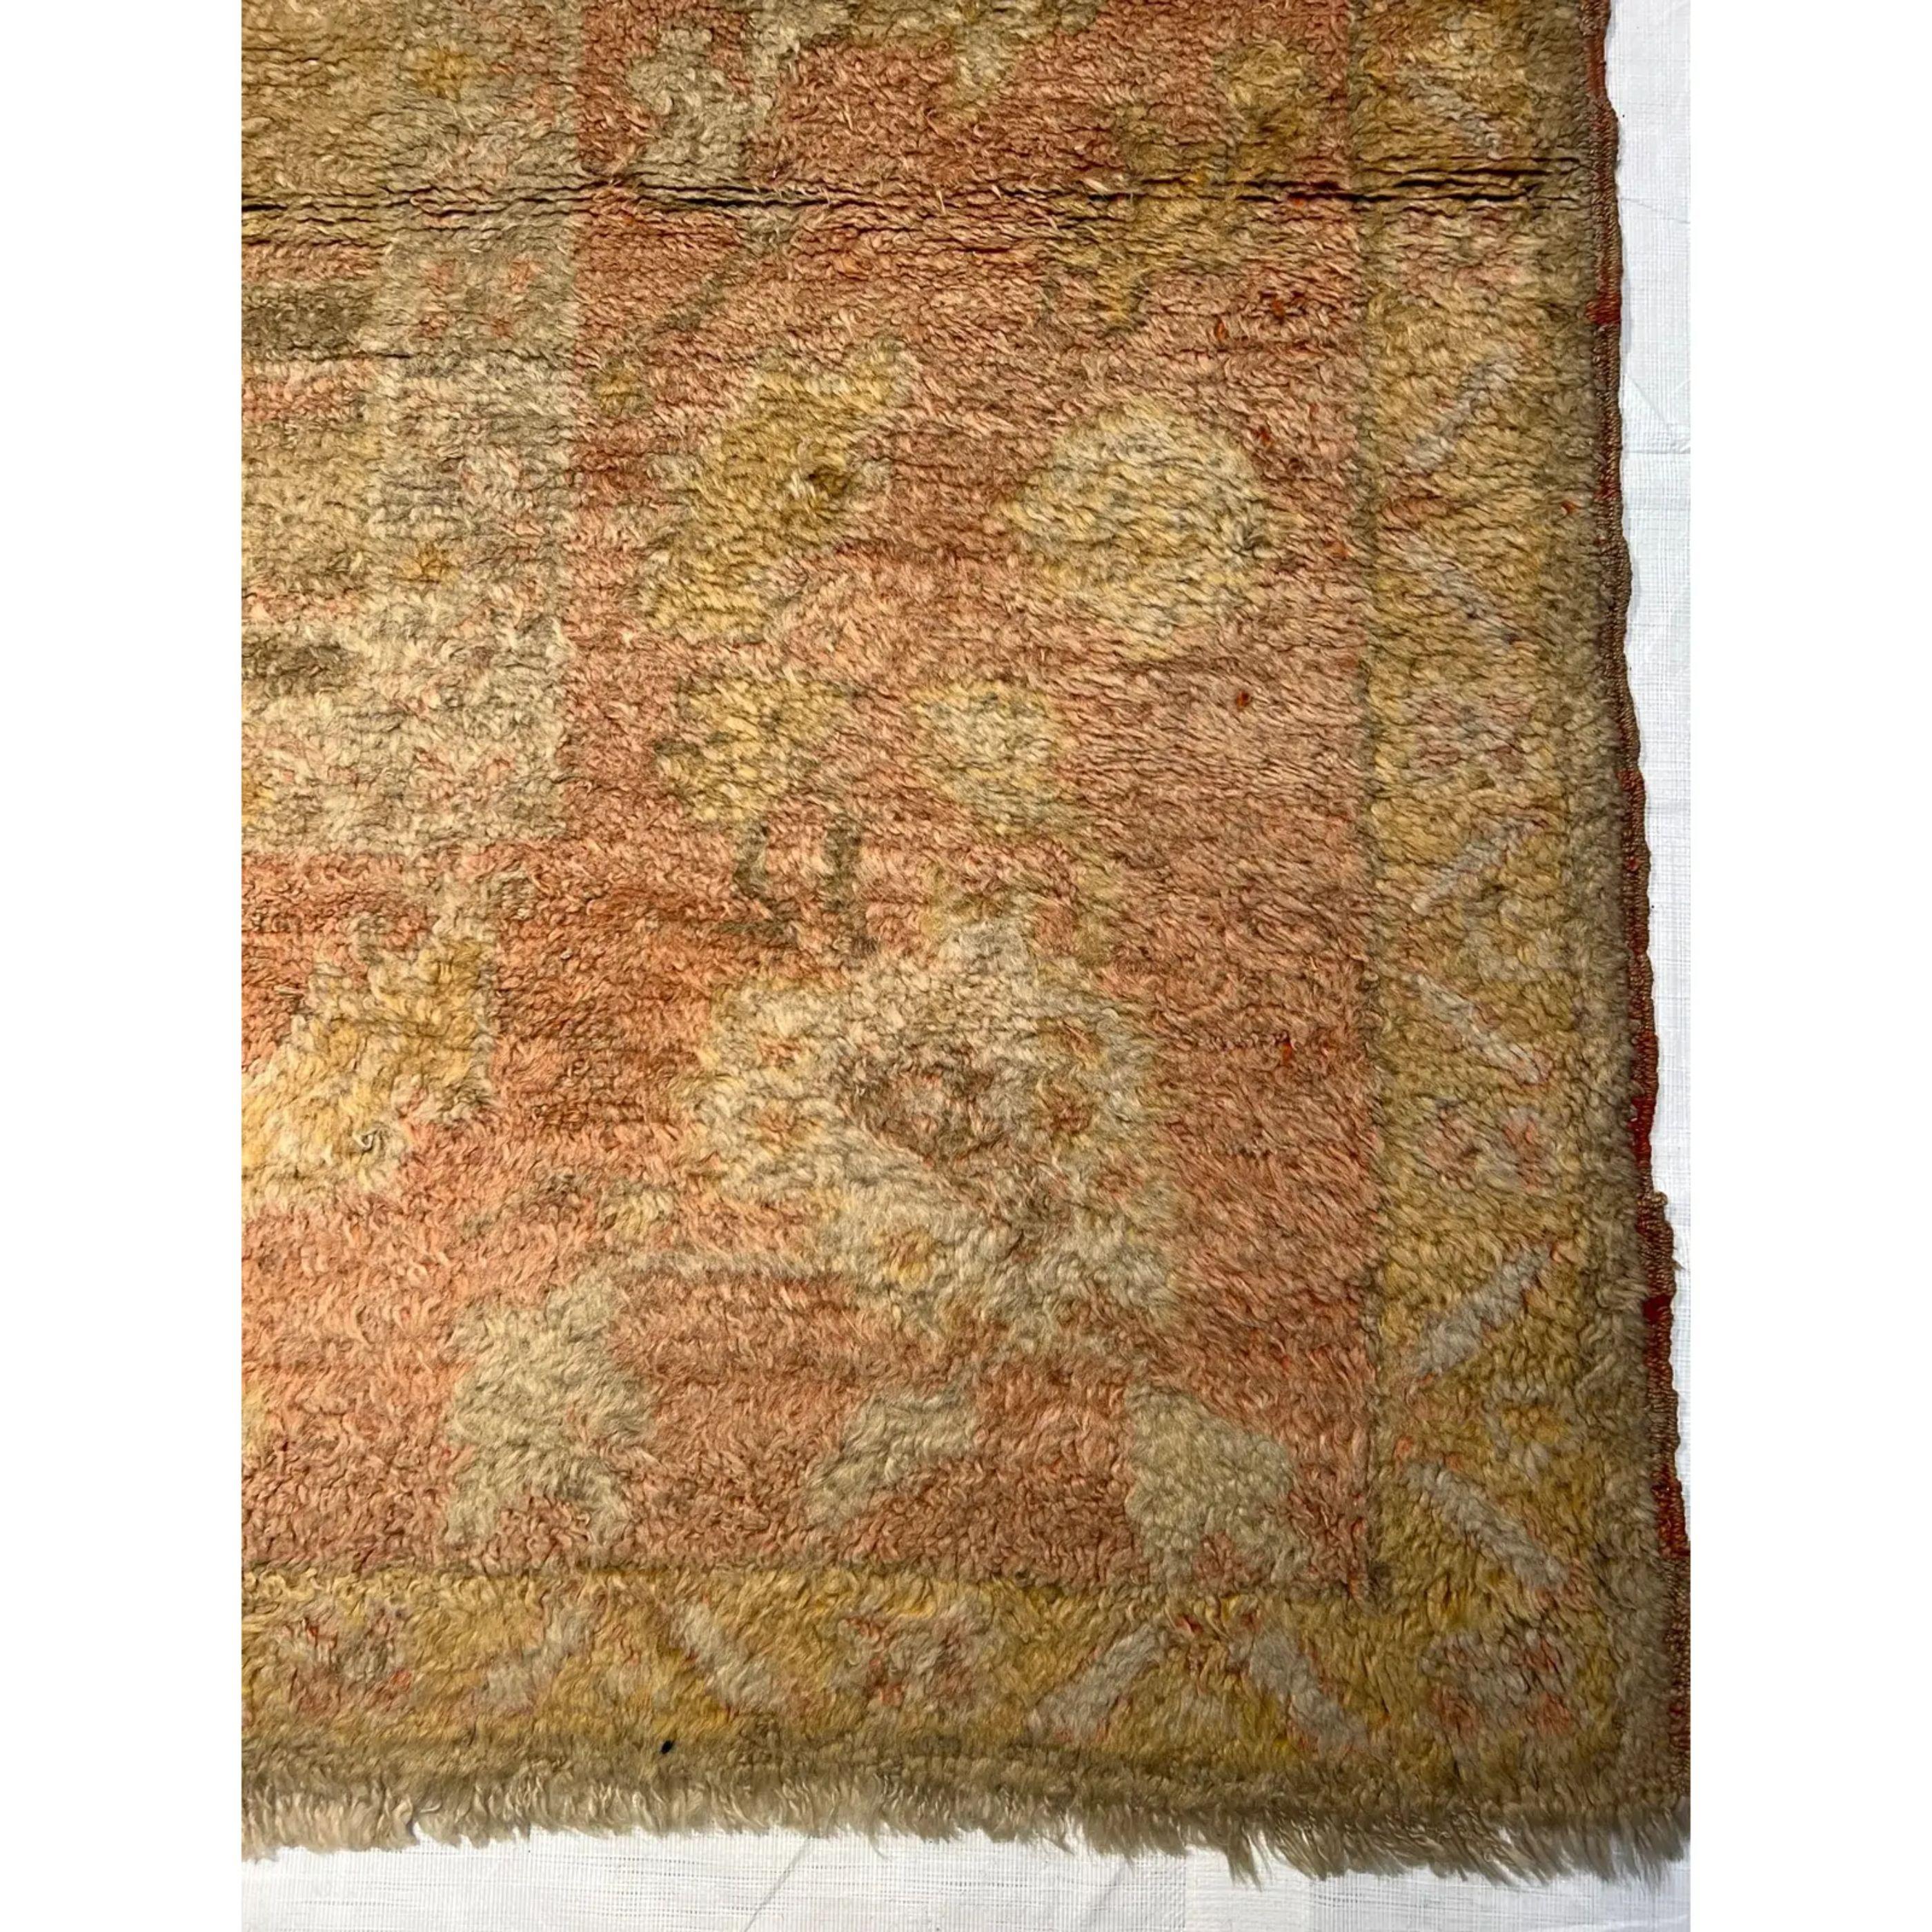 Wool 19th Century Turkish Oushak Rug 13'9